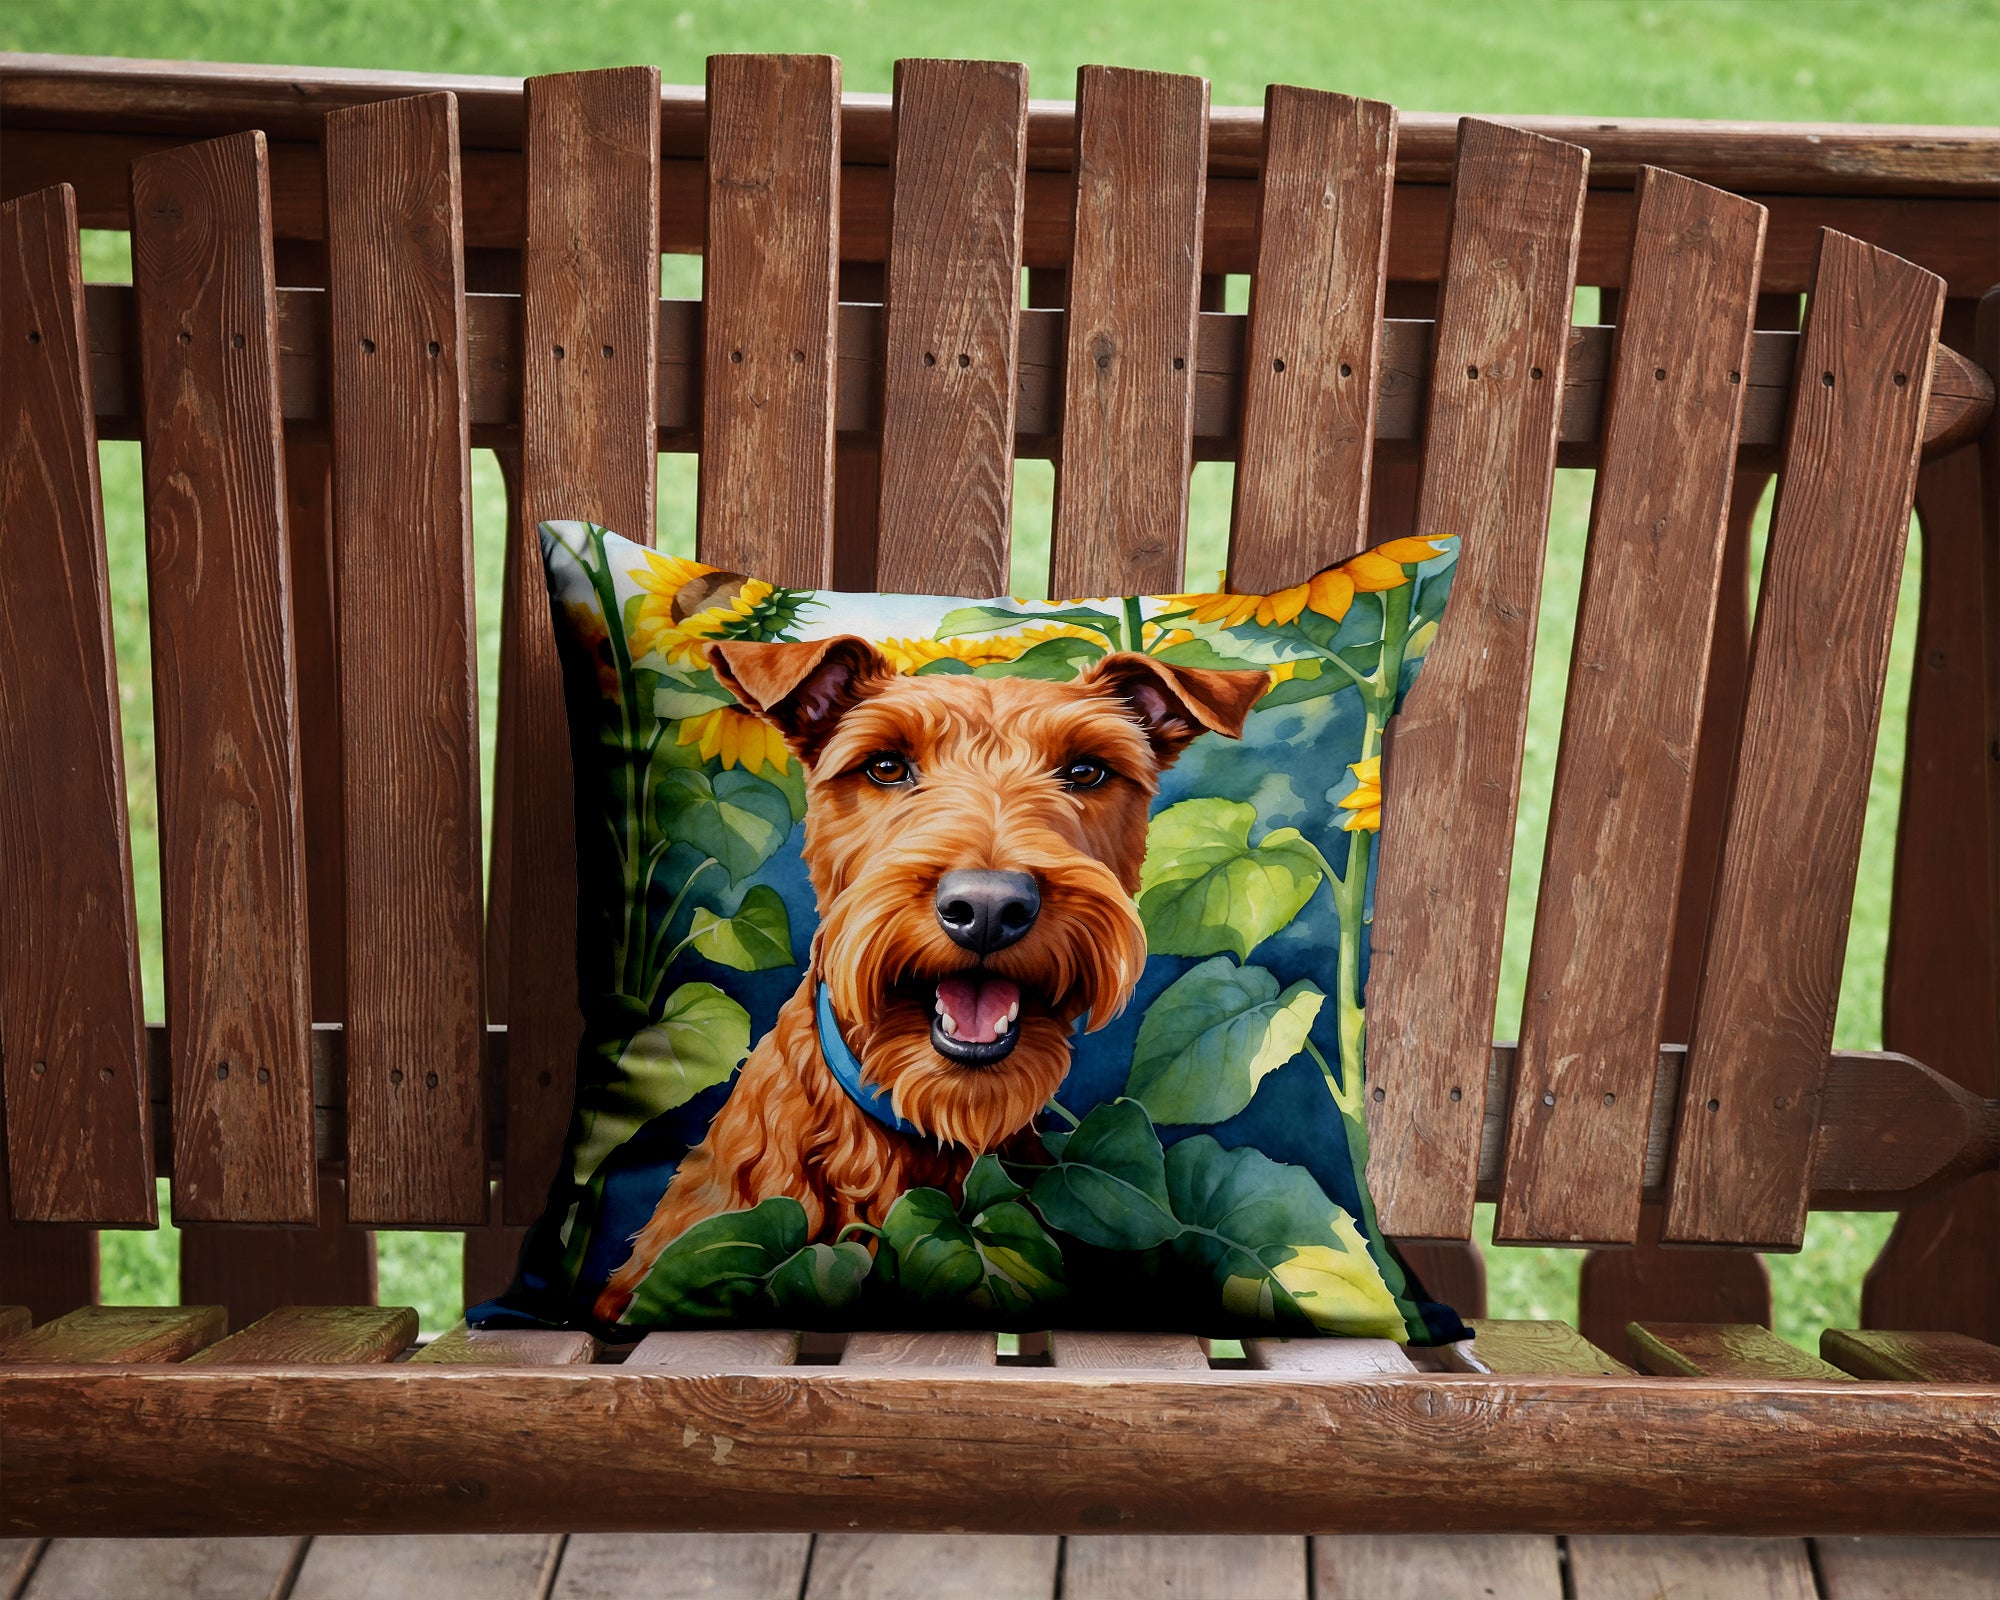 Buy this Irish Terrier in Sunflowers Throw Pillow